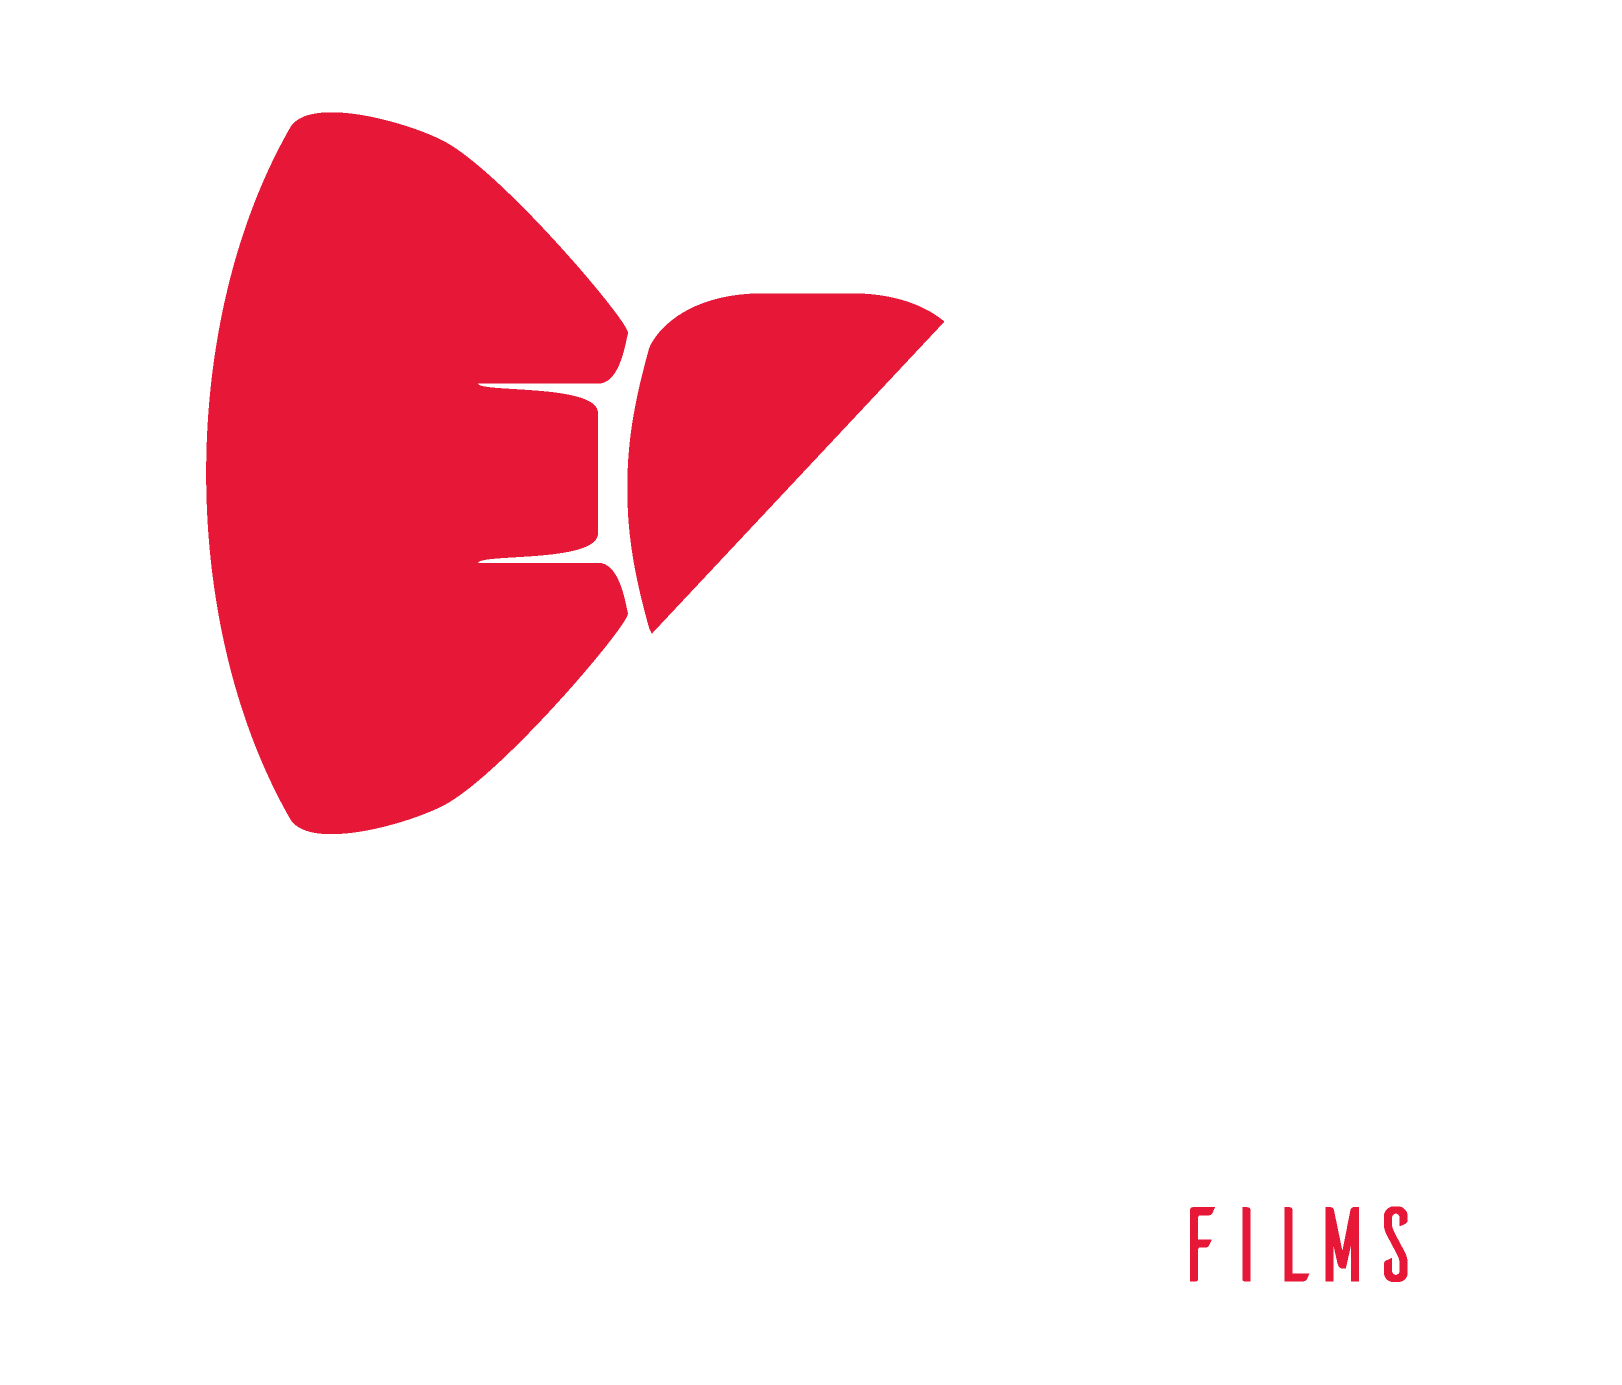 Inefable Films